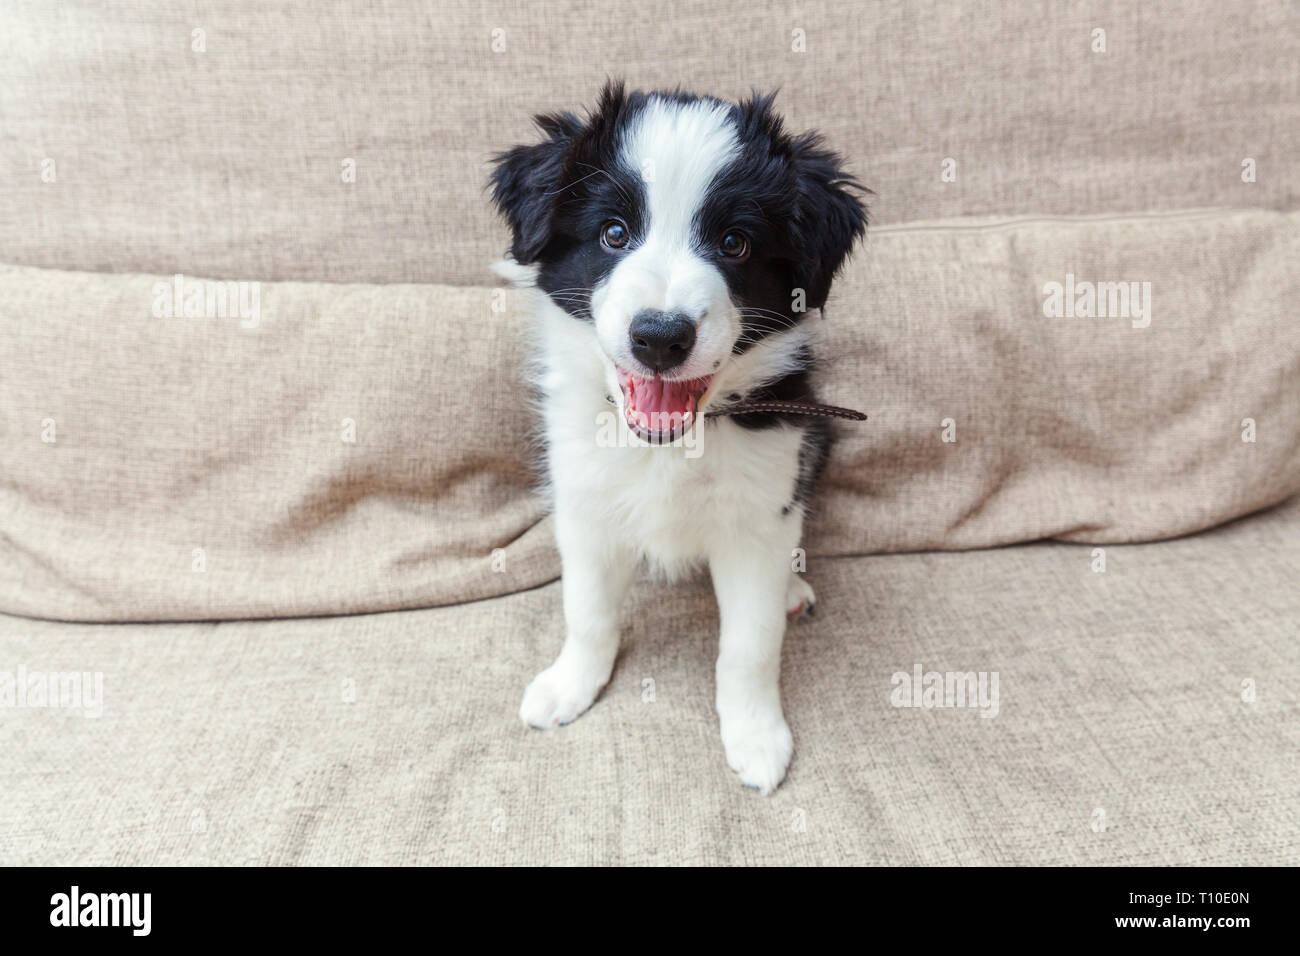 Lustige Portrait von niedlichen smilling Welpe Hund Border Collie auf der Couch. Neue schöne Mitglied der Familie kleiner Hund zu Hause gucken und warten auf Lohn. Pet-ca Stockfoto